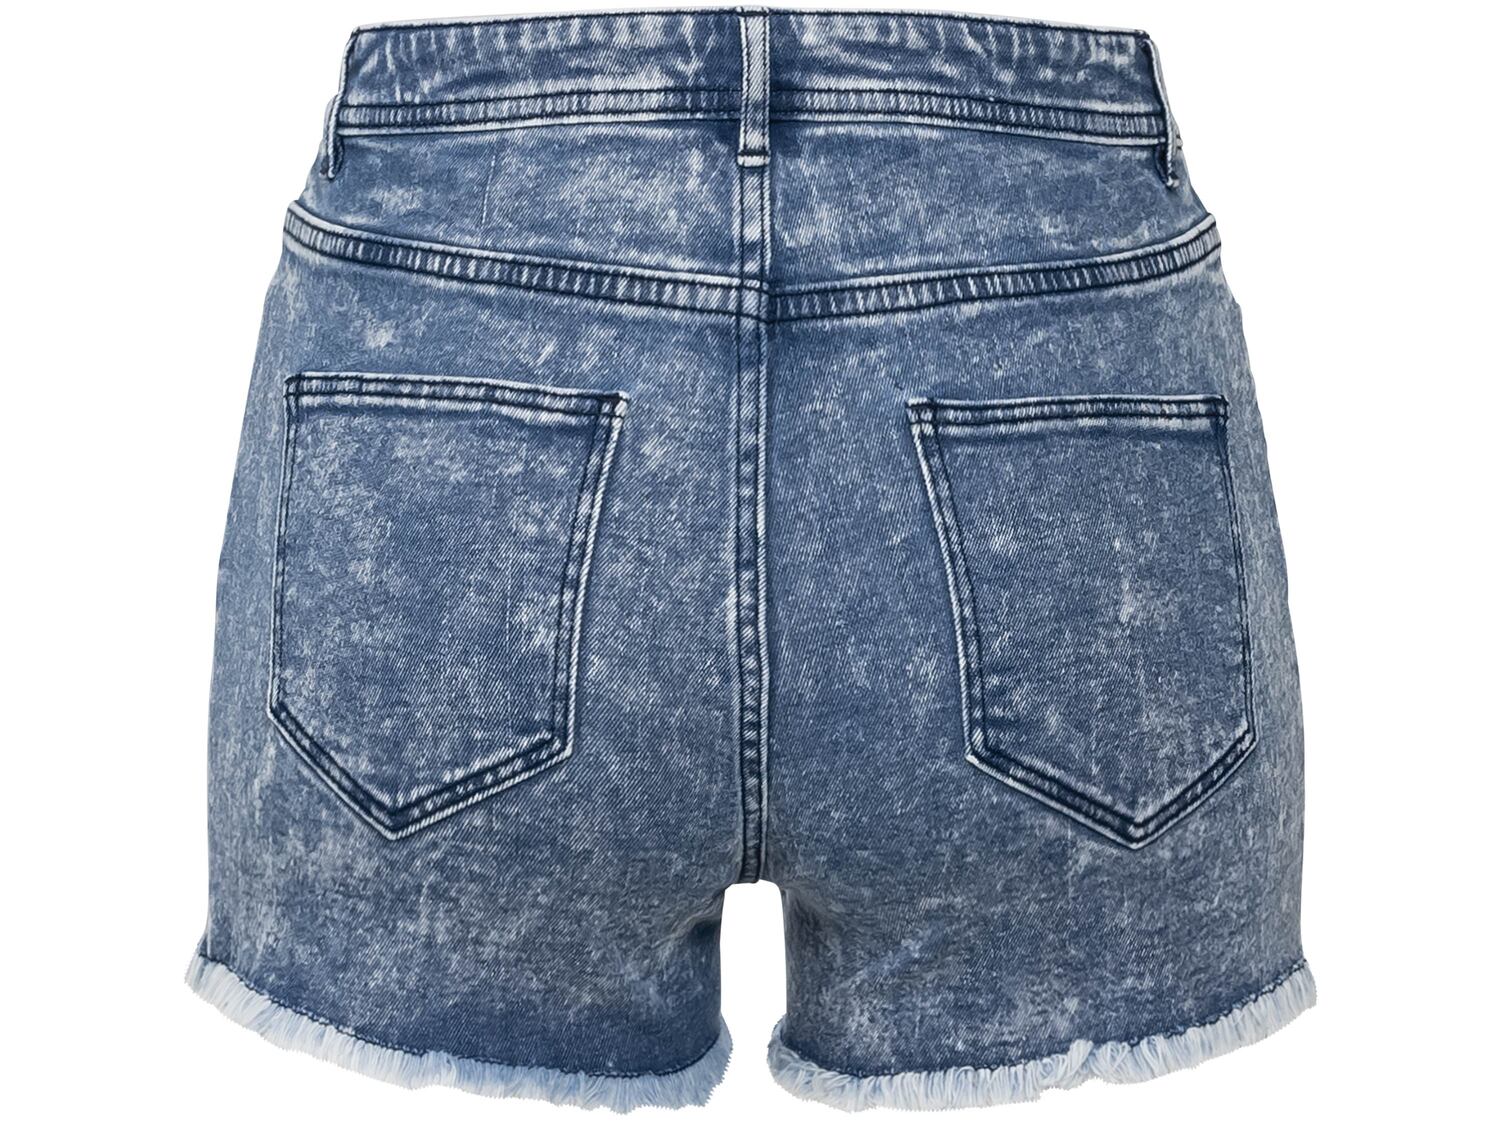 Szorty jeansowe damskie Esmara, cena 29,99 PLN 
- 98% bawełny, 2% elastanu (LYCRA&reg;)
- ...